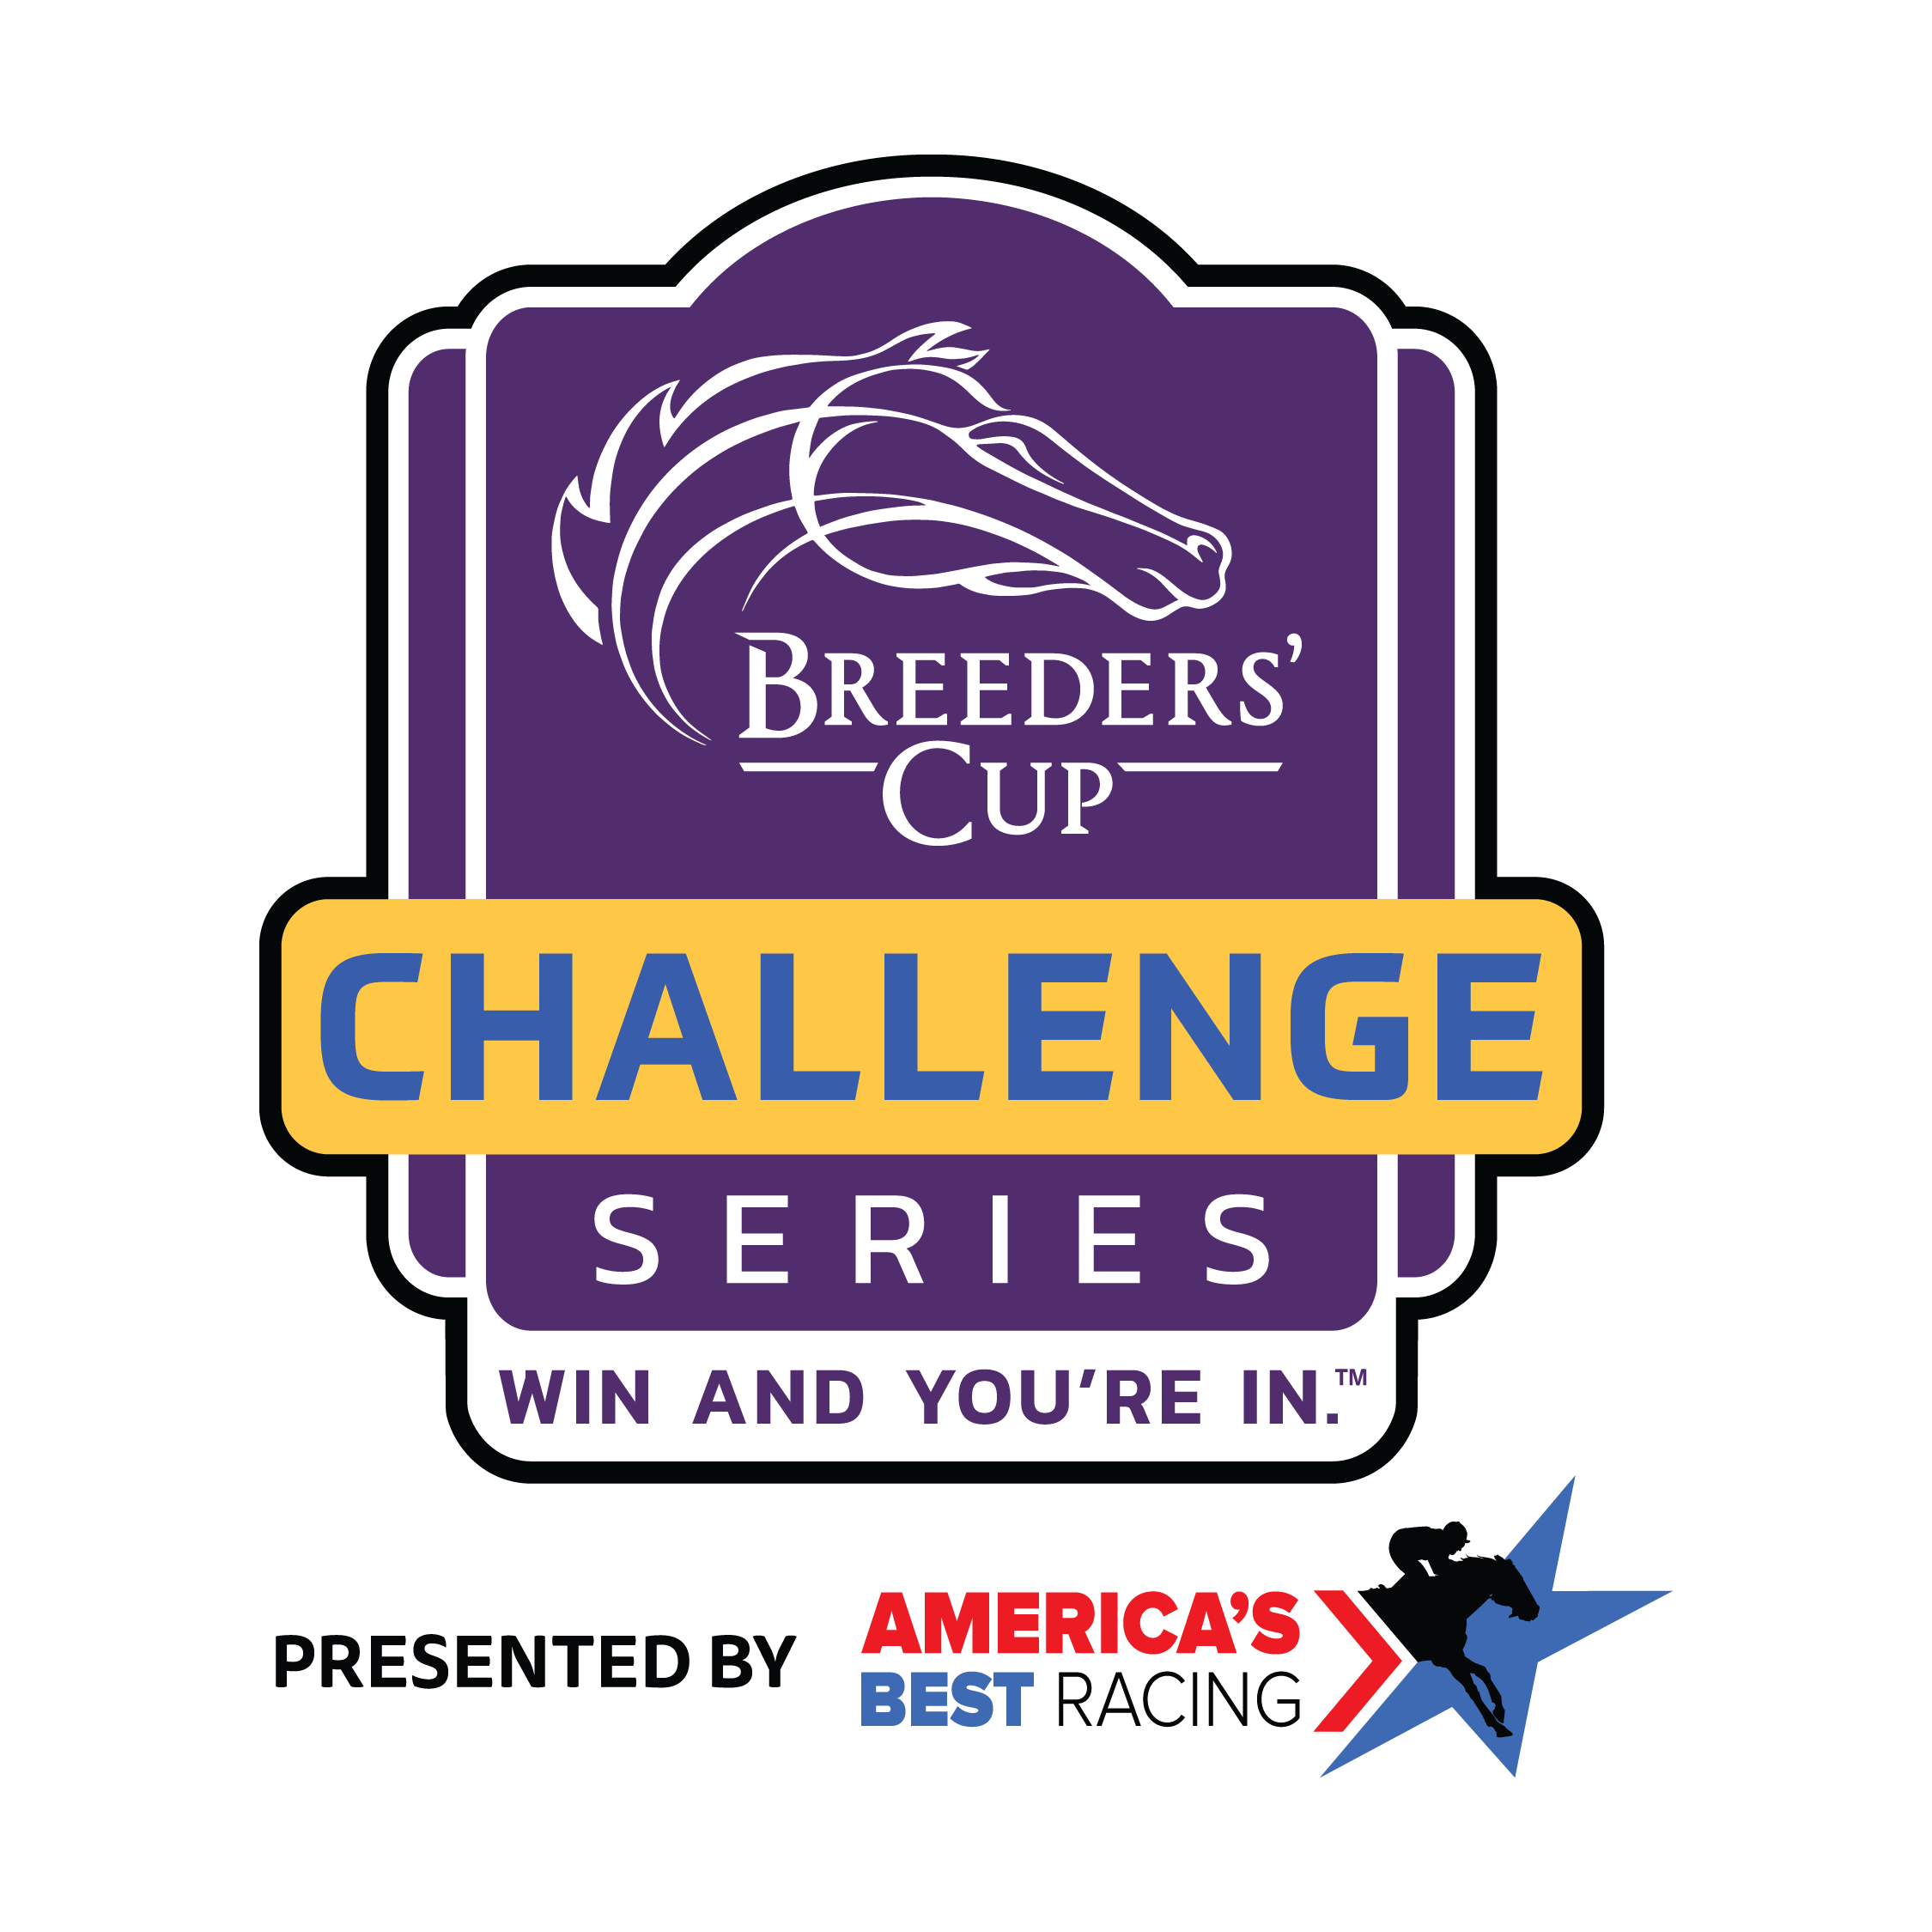 Breeders' Cup Challenge Series presented by America's Best Racing logo